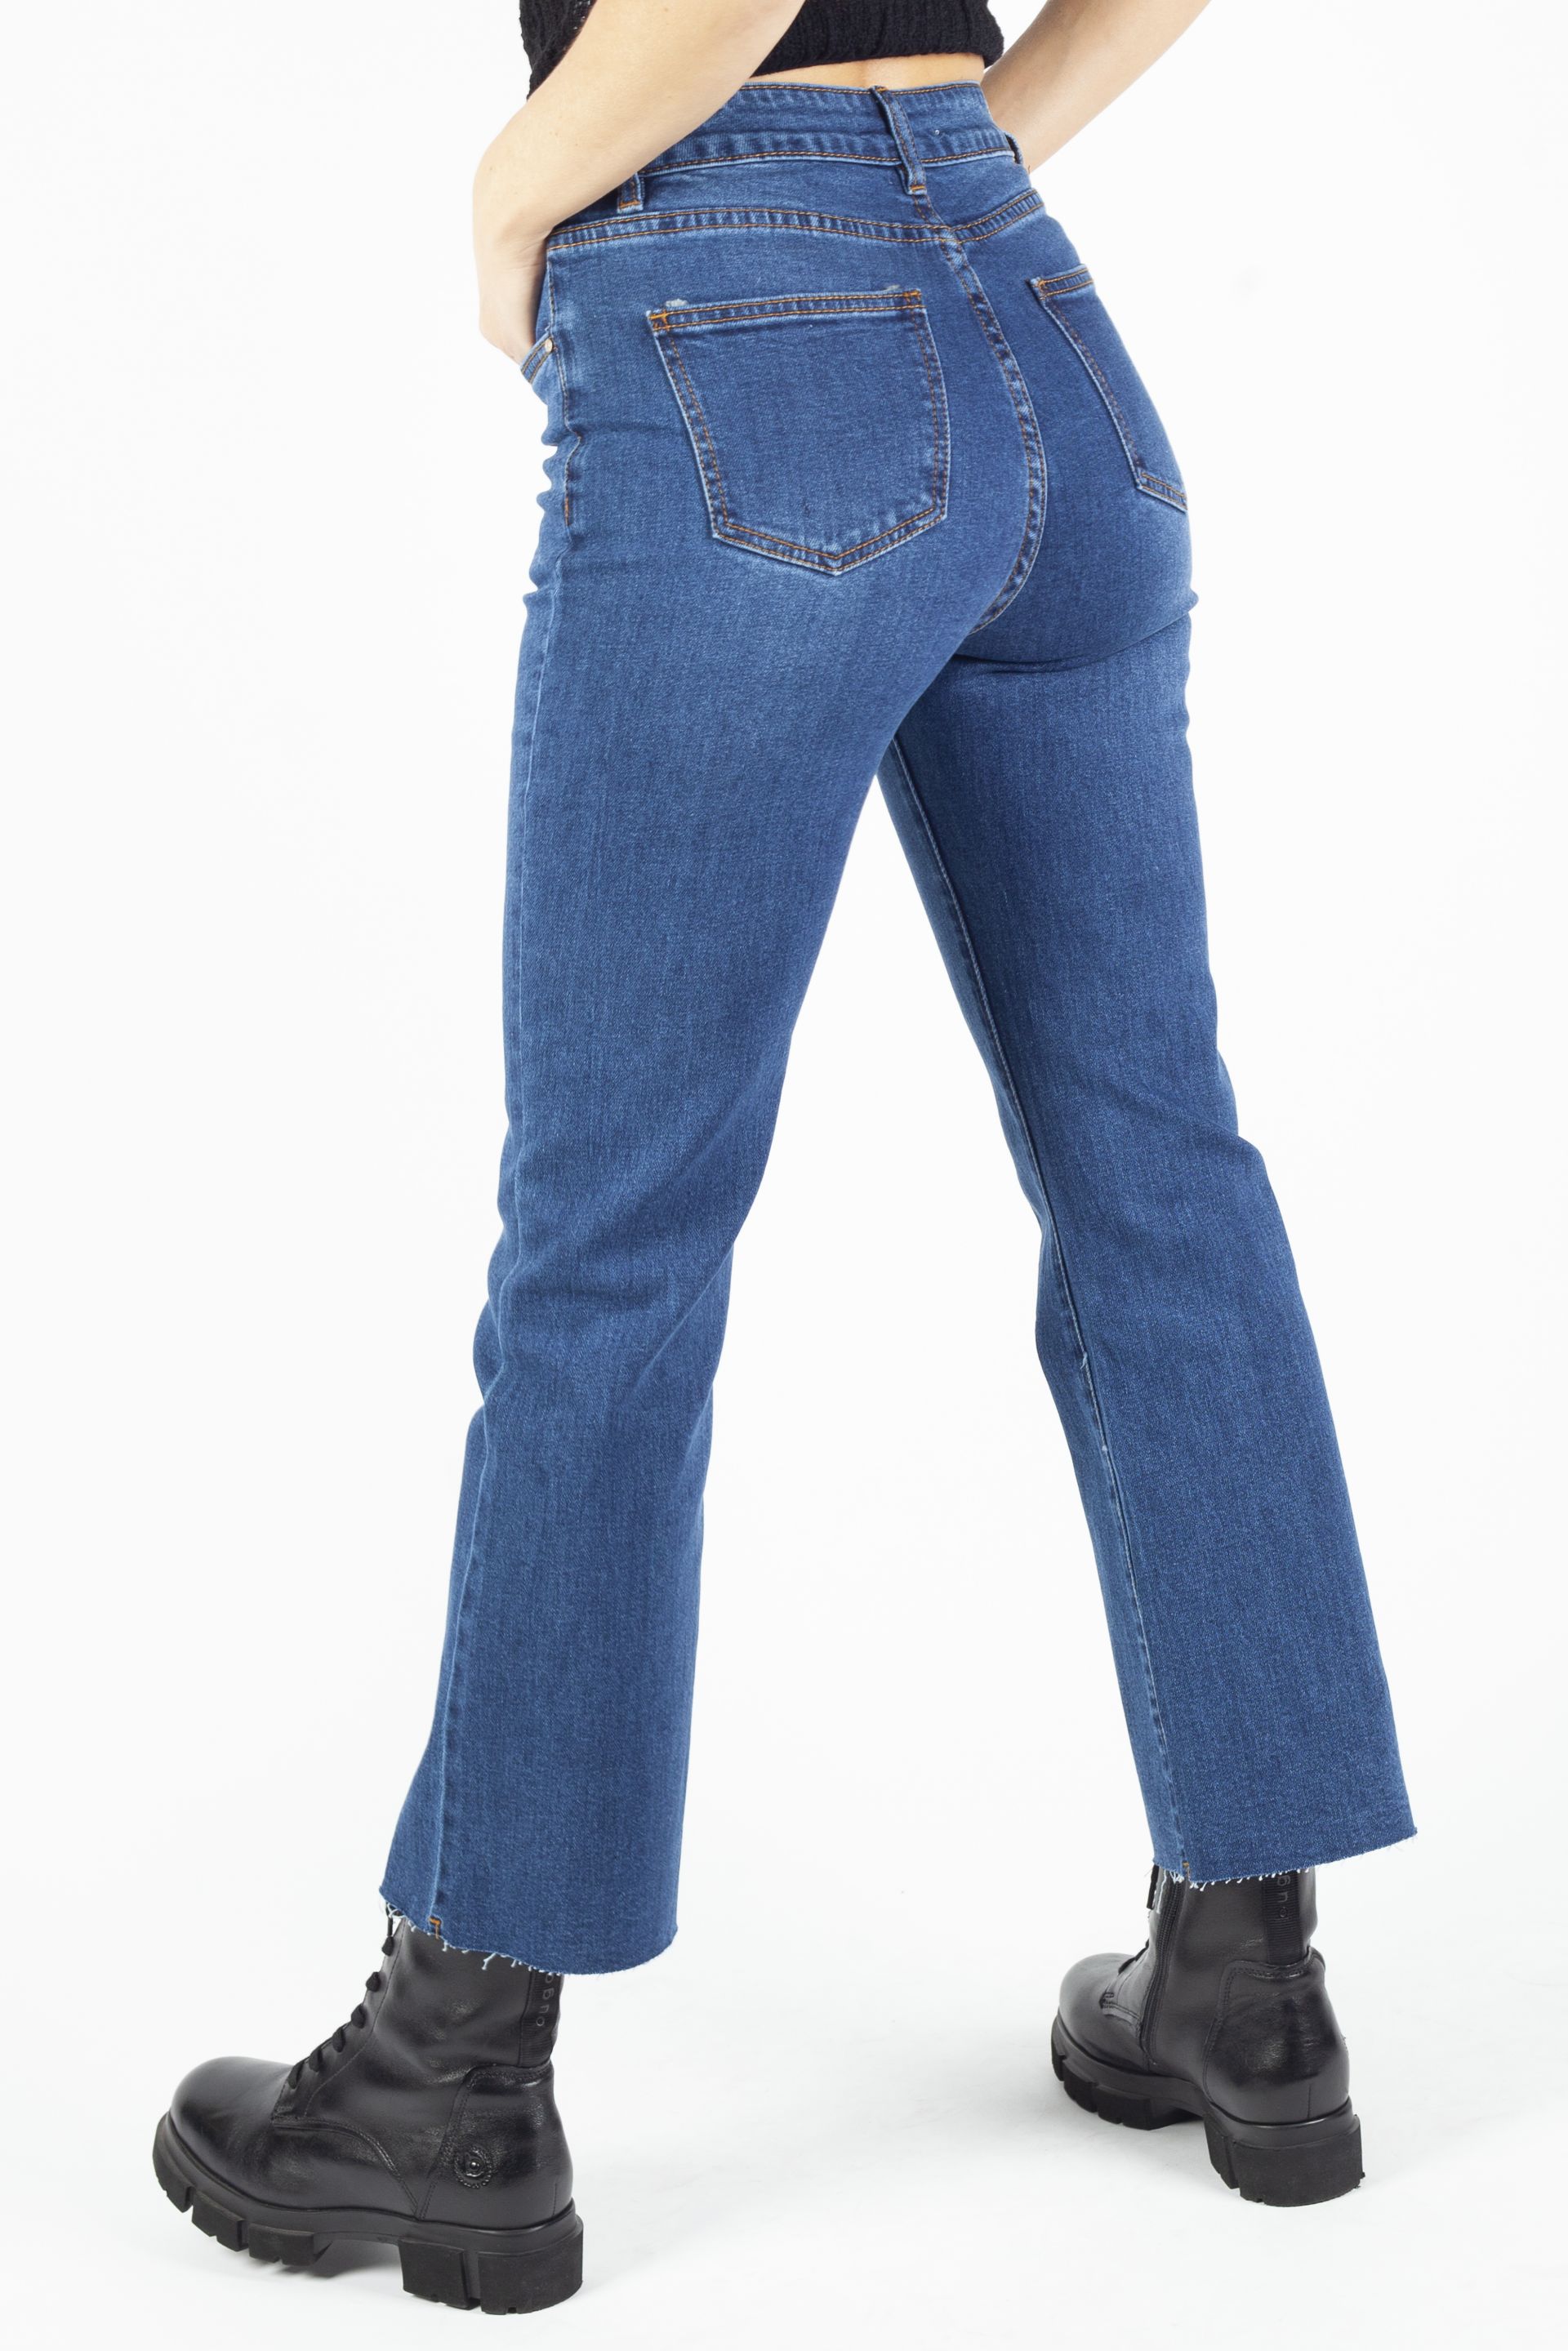 Jeans VS MISS VS7516